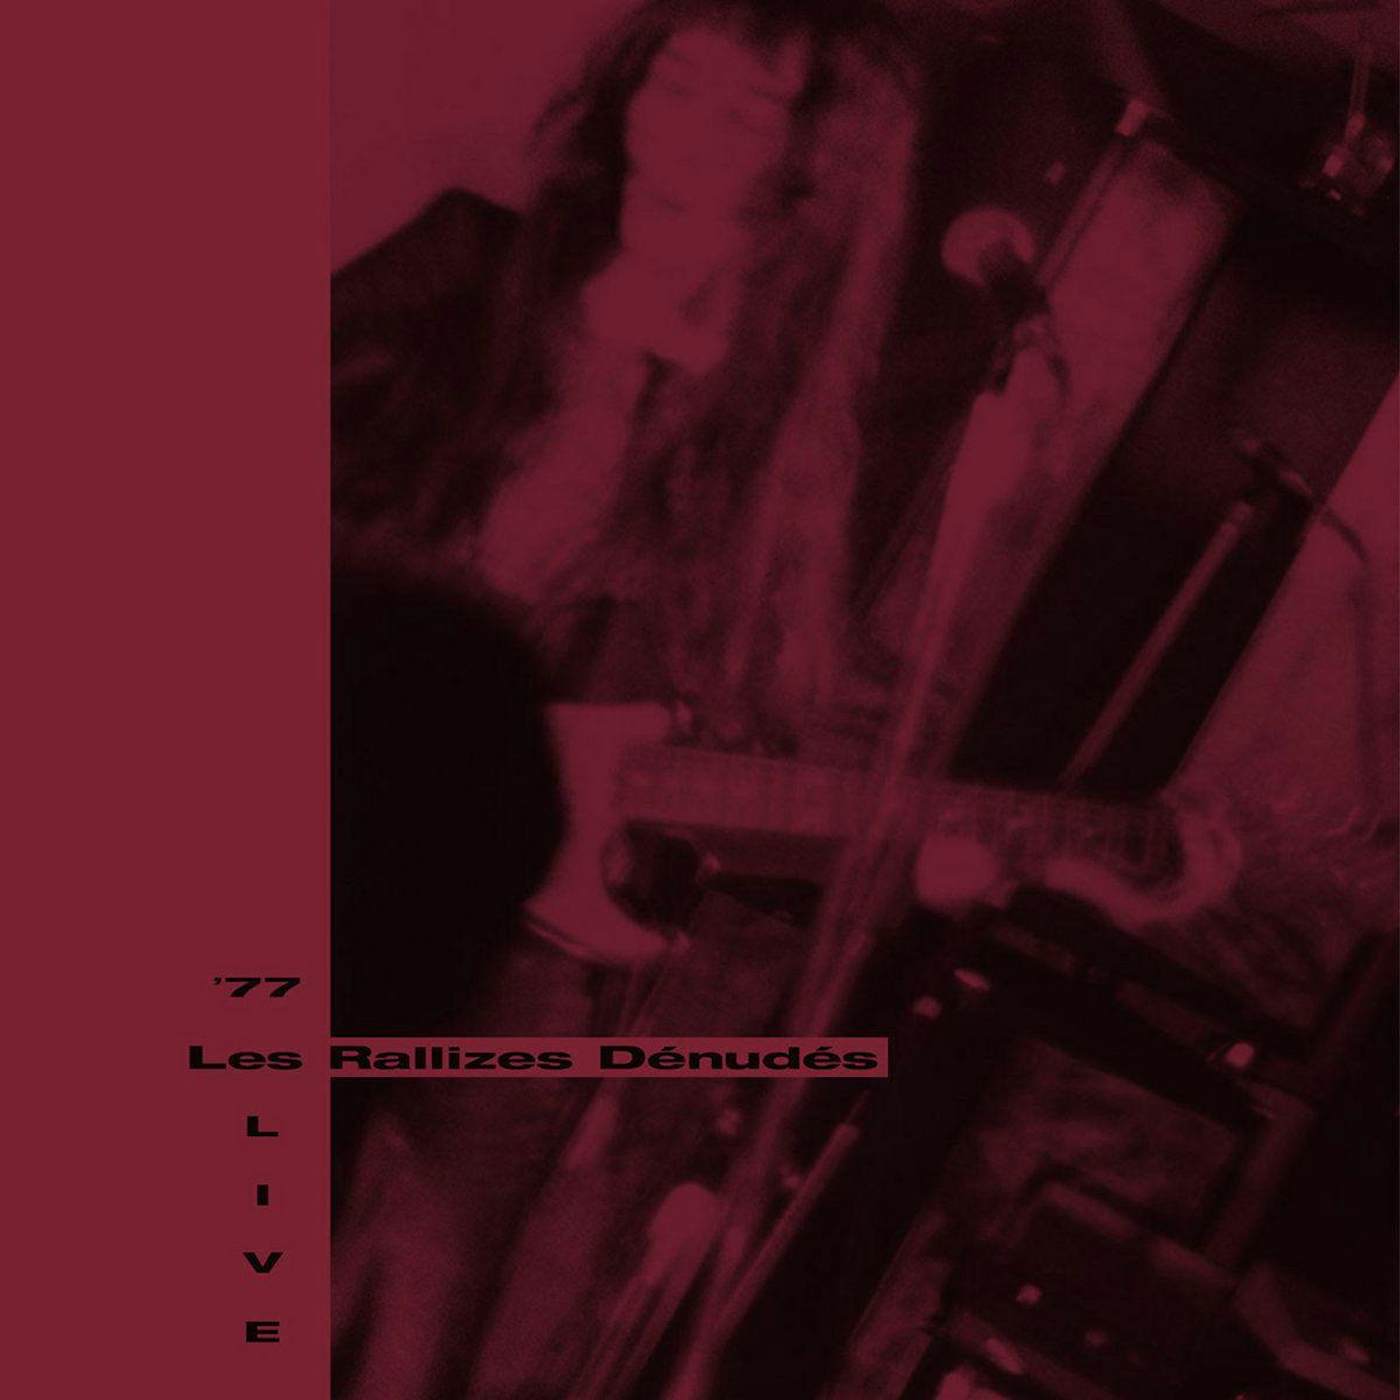 Les Rallizes Dénudés ‘77 LIVE (3LP/OPAQUE RED VINYL) Vinyl Record